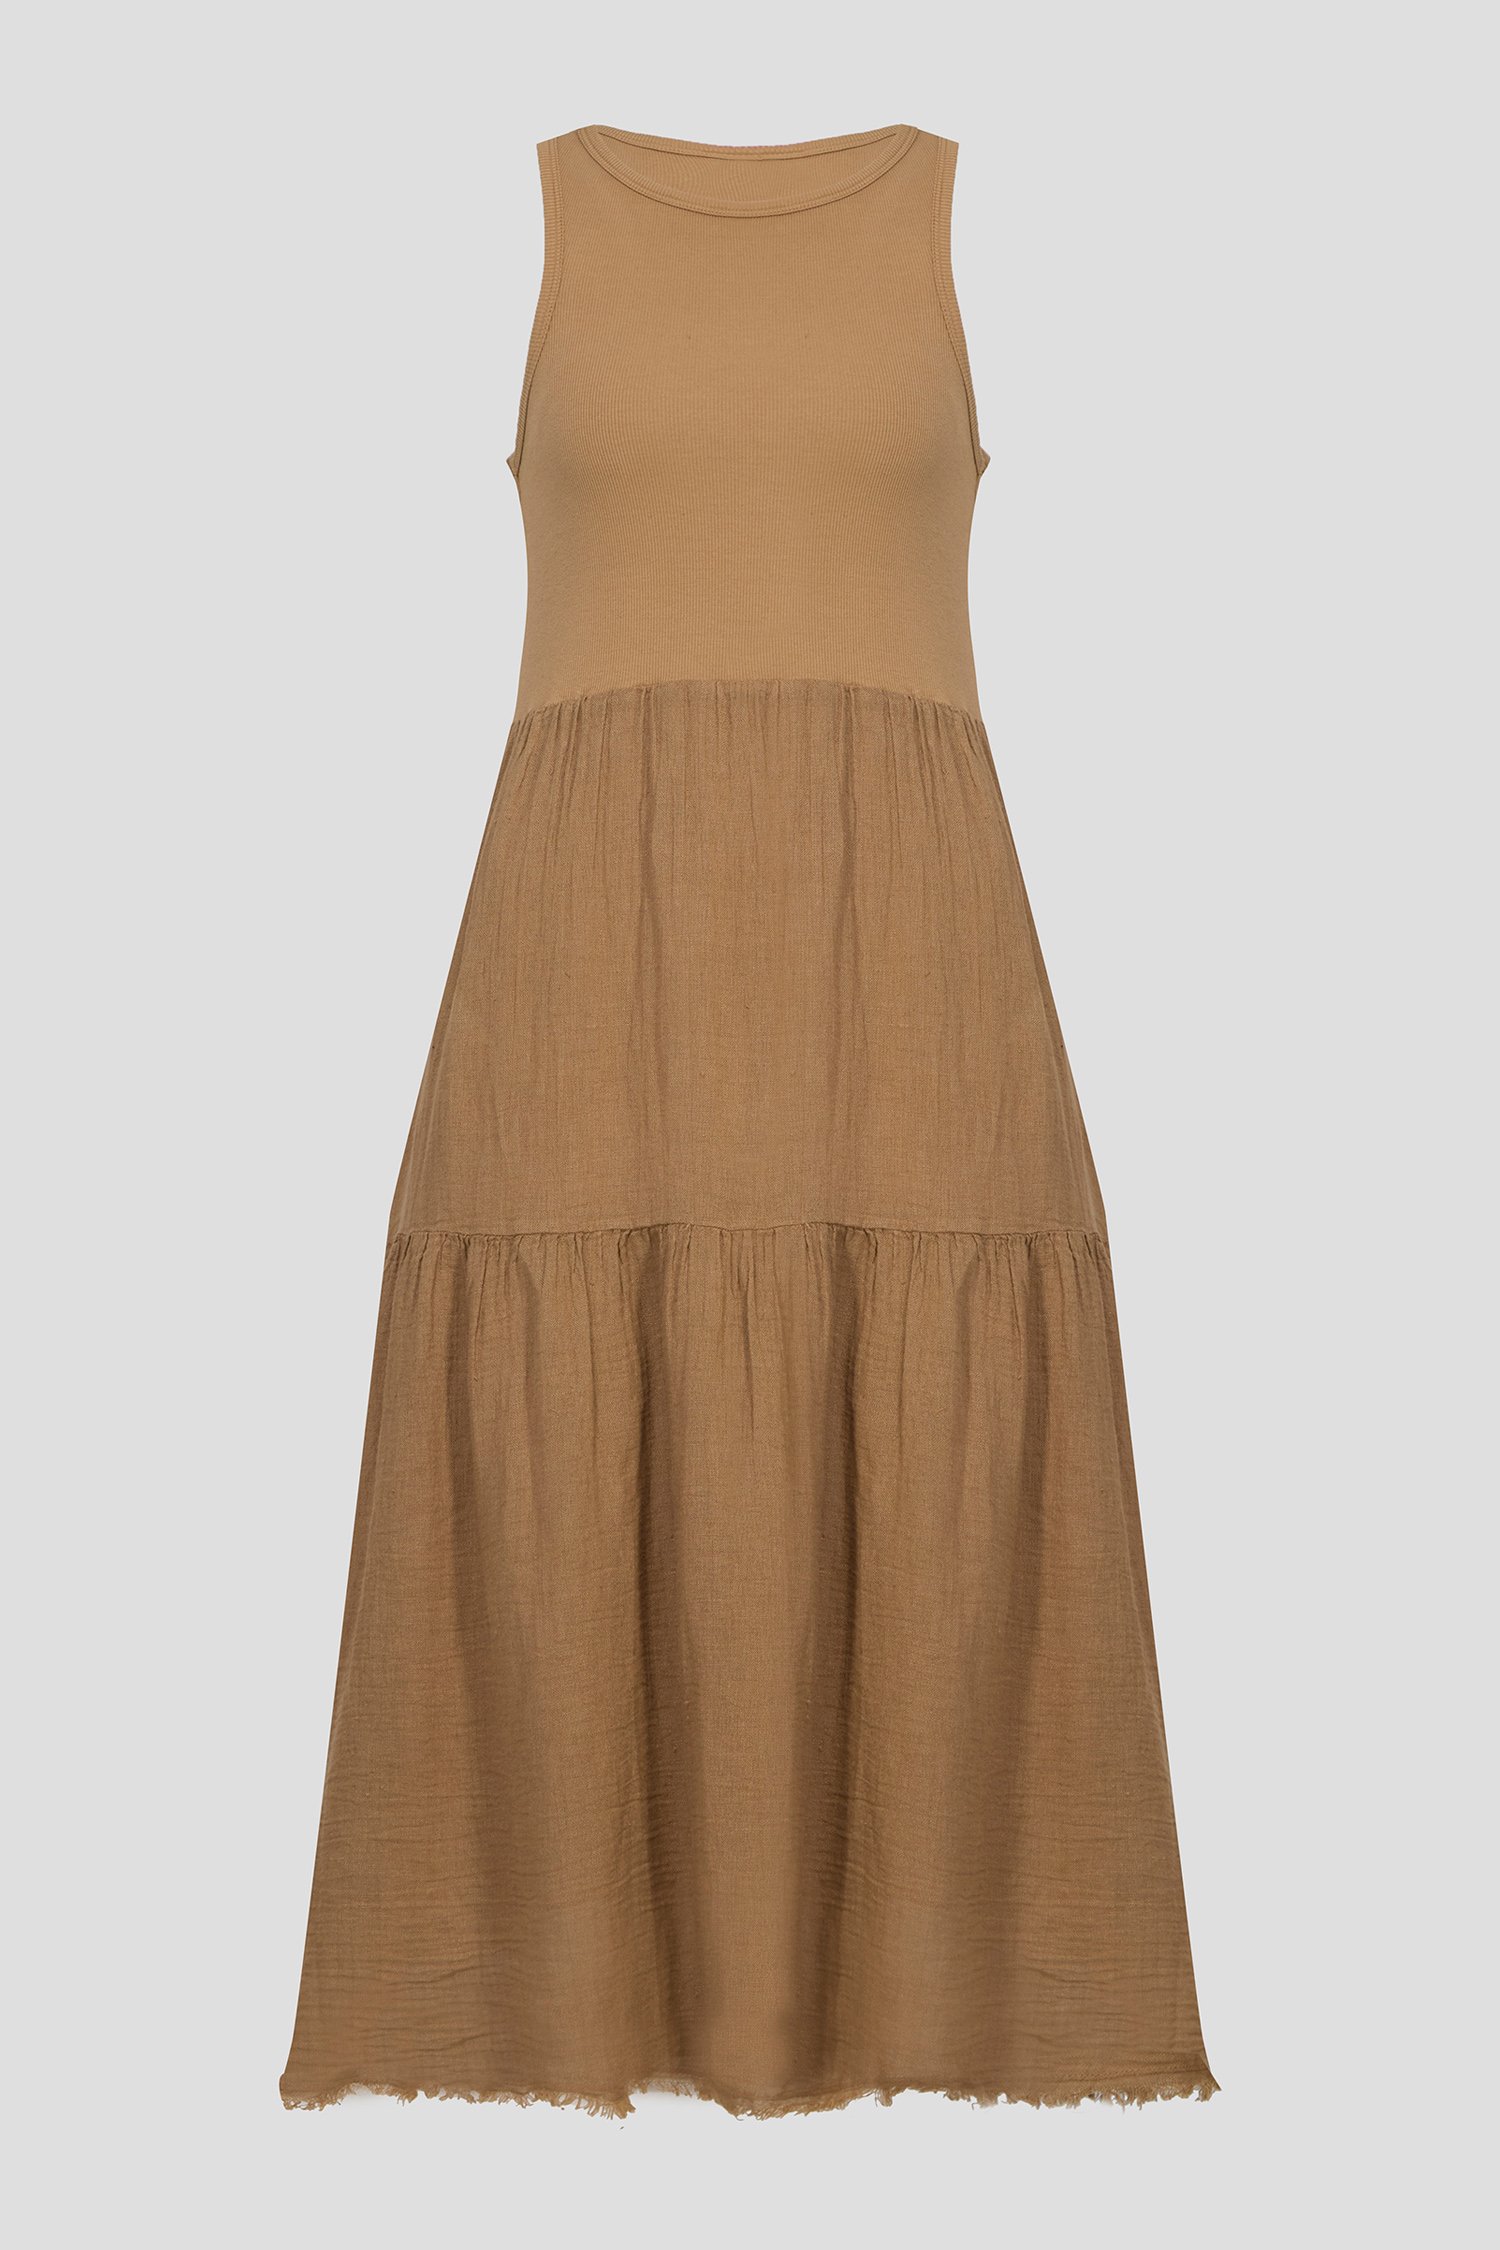 Женское коричневое платье 1